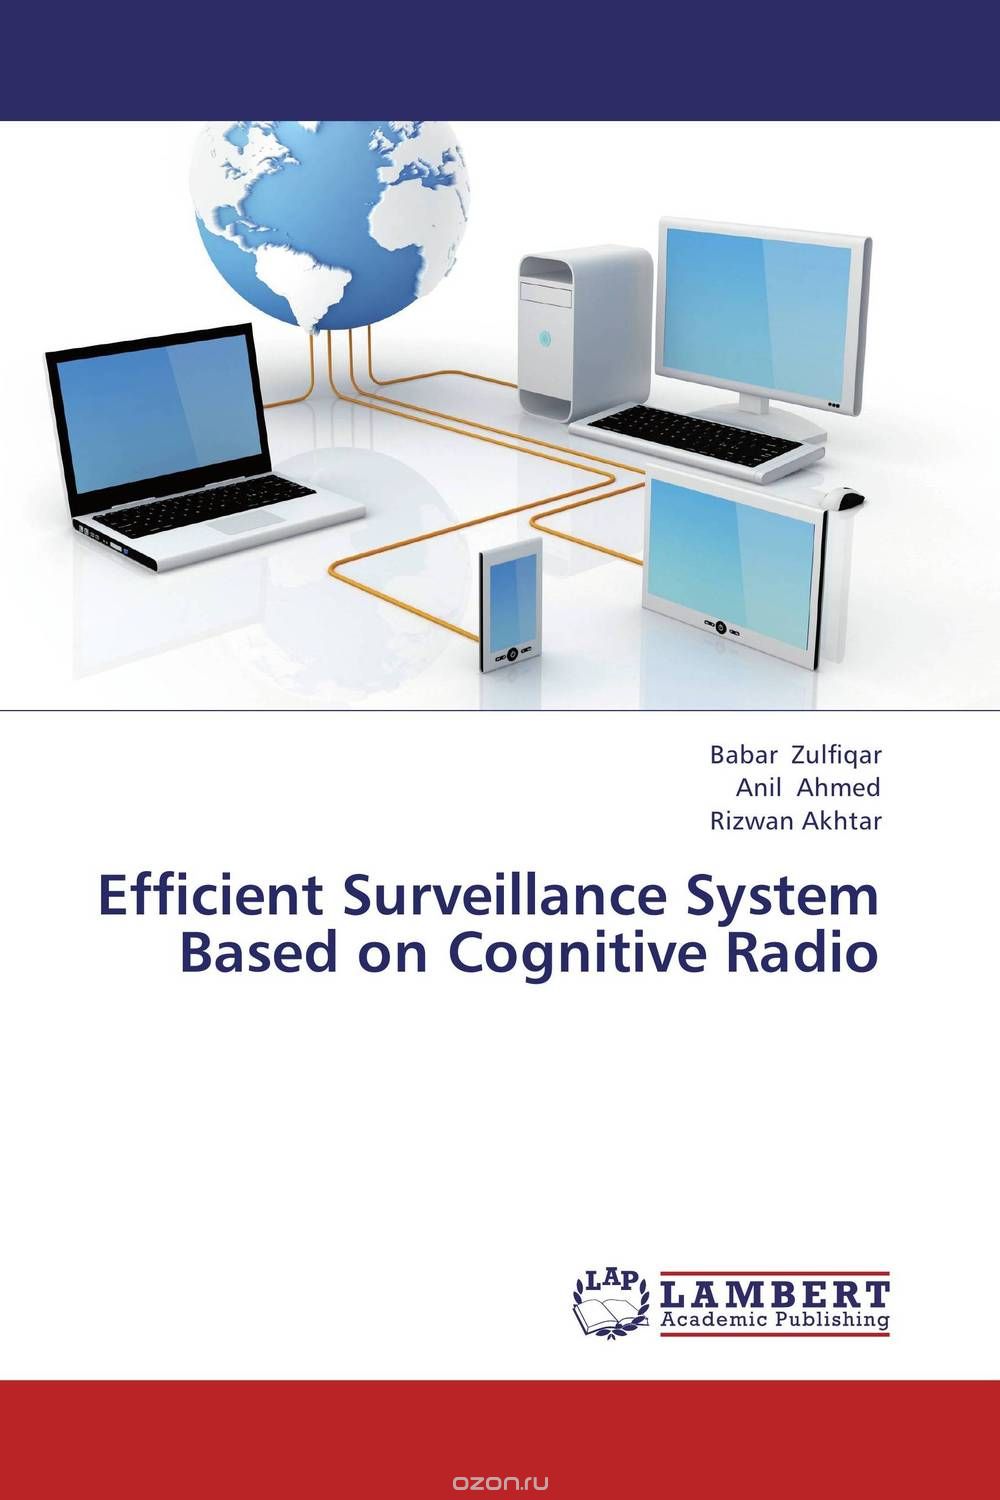 Скачать книгу "Efficient Surveillance System Based on Cognitive Radio"